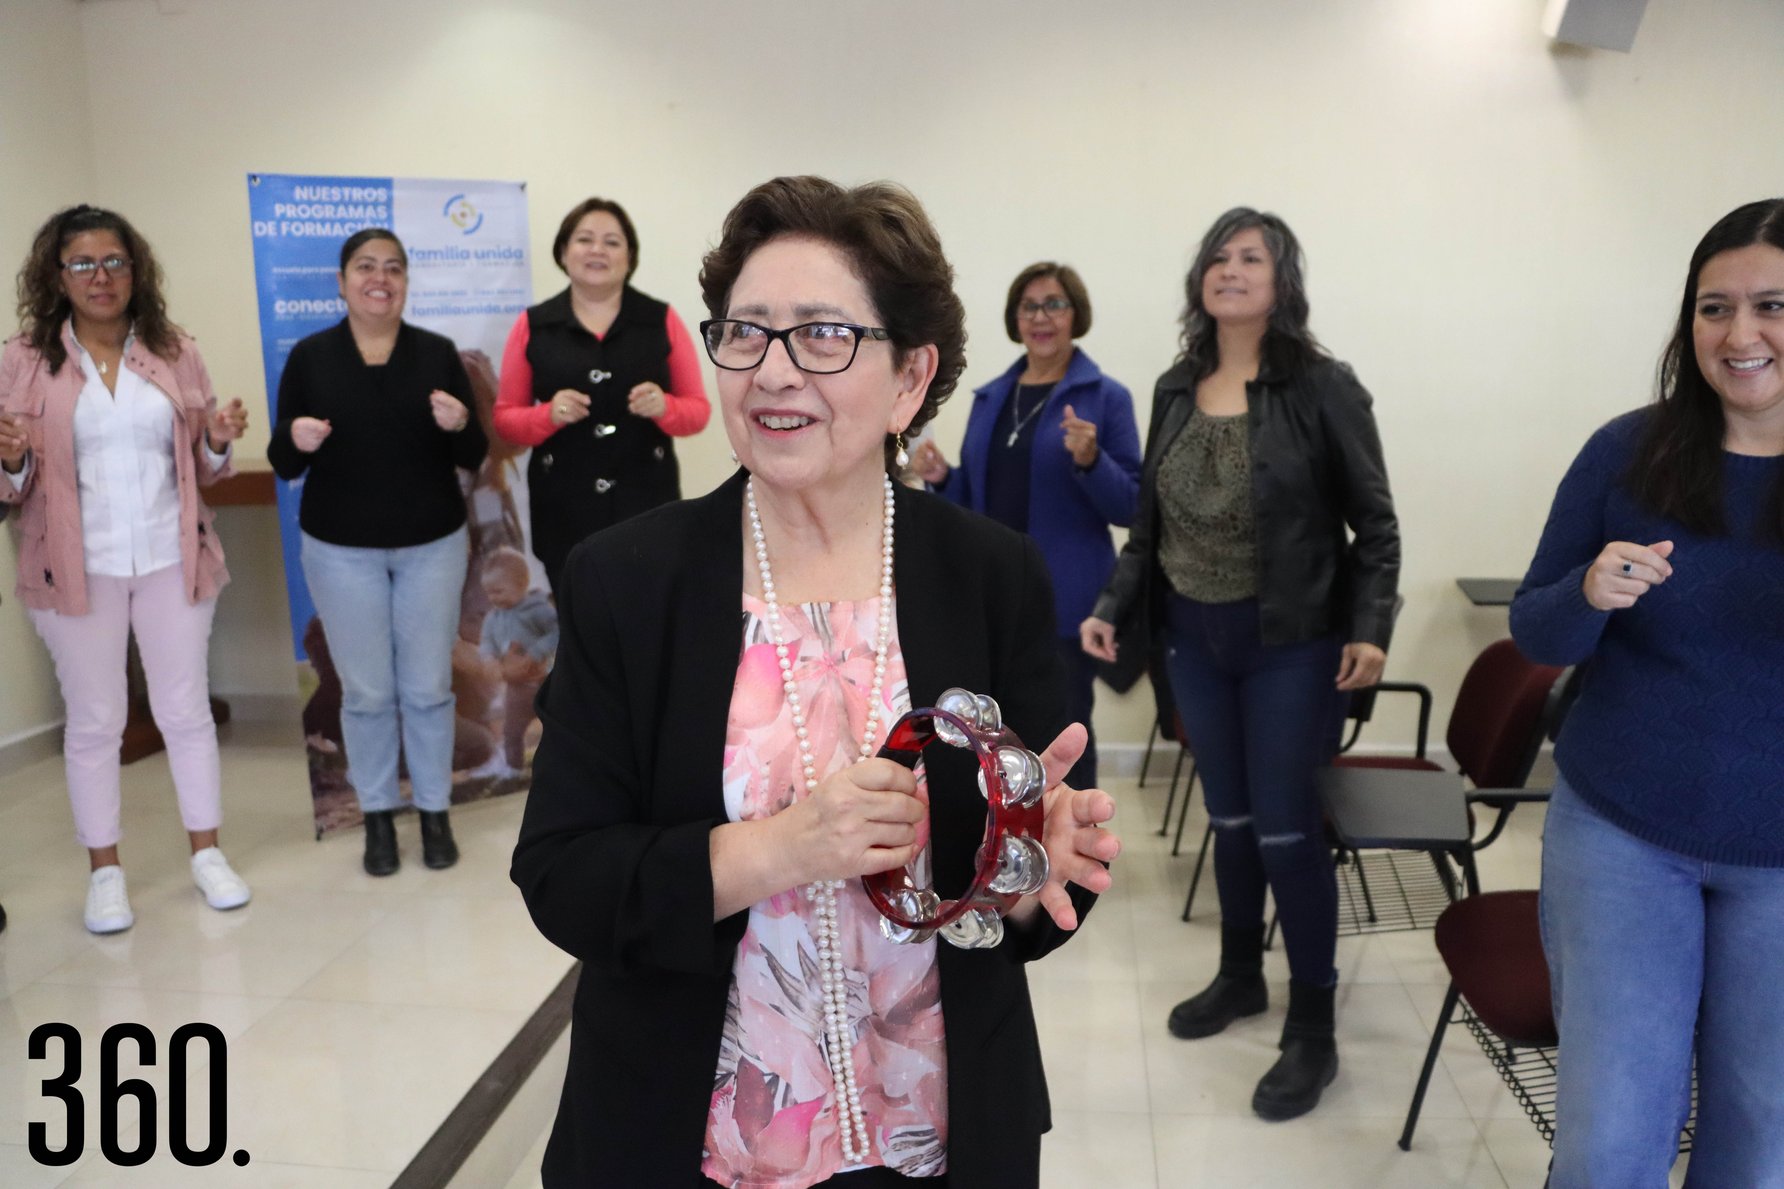 Leticia Prado Delgado impartió la conferencia “Reinvéntate”, en el salón de usos múltiples del club Timón.